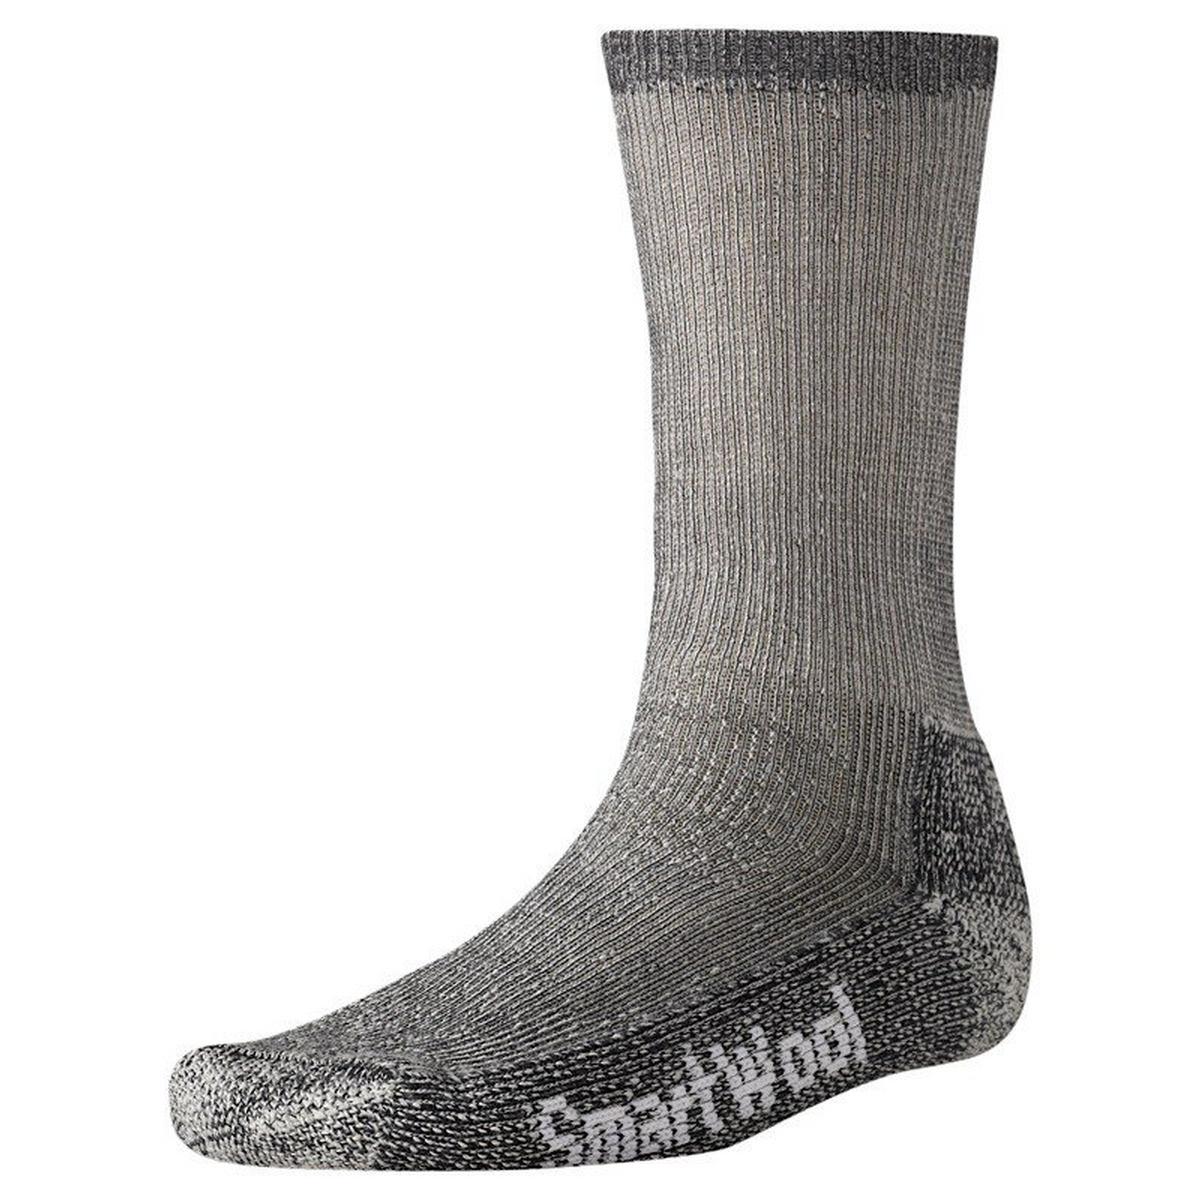 Smartwool HIKING Socks Men's Trekking Heavy Crew Grey